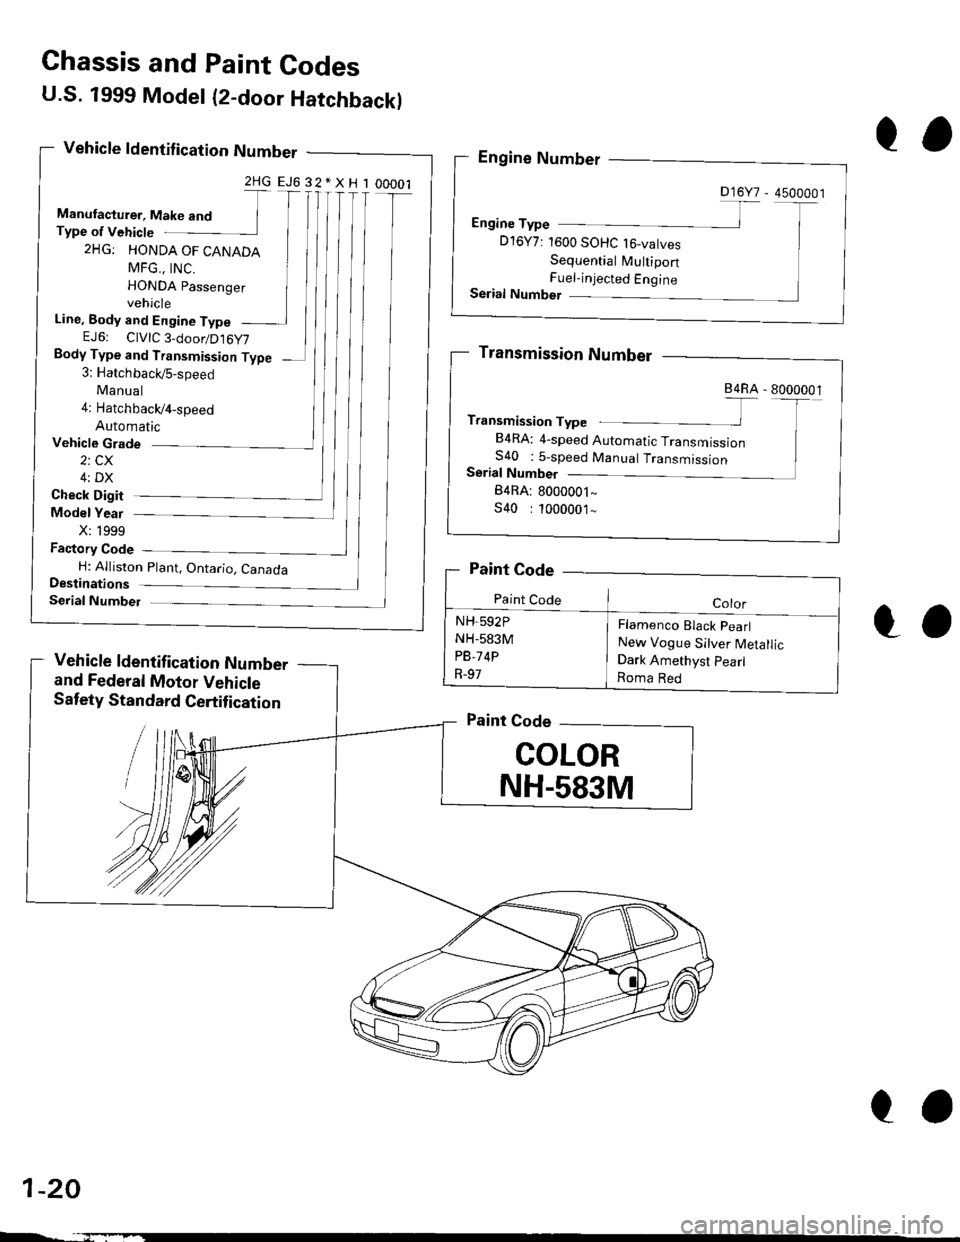 HONDA CIVIC 1997 6.G User Guide U.S. 1999 Model (2-door Hatchbackl
Vehicle ldentif ication Number
2HGEJ632*XH100001
Manufacturer, Make and TType of Vehicte
2HG: HONDA OF CANADA
MFG.. tNC. IHONDA passenger Ivehicle
Line, Body and Eng